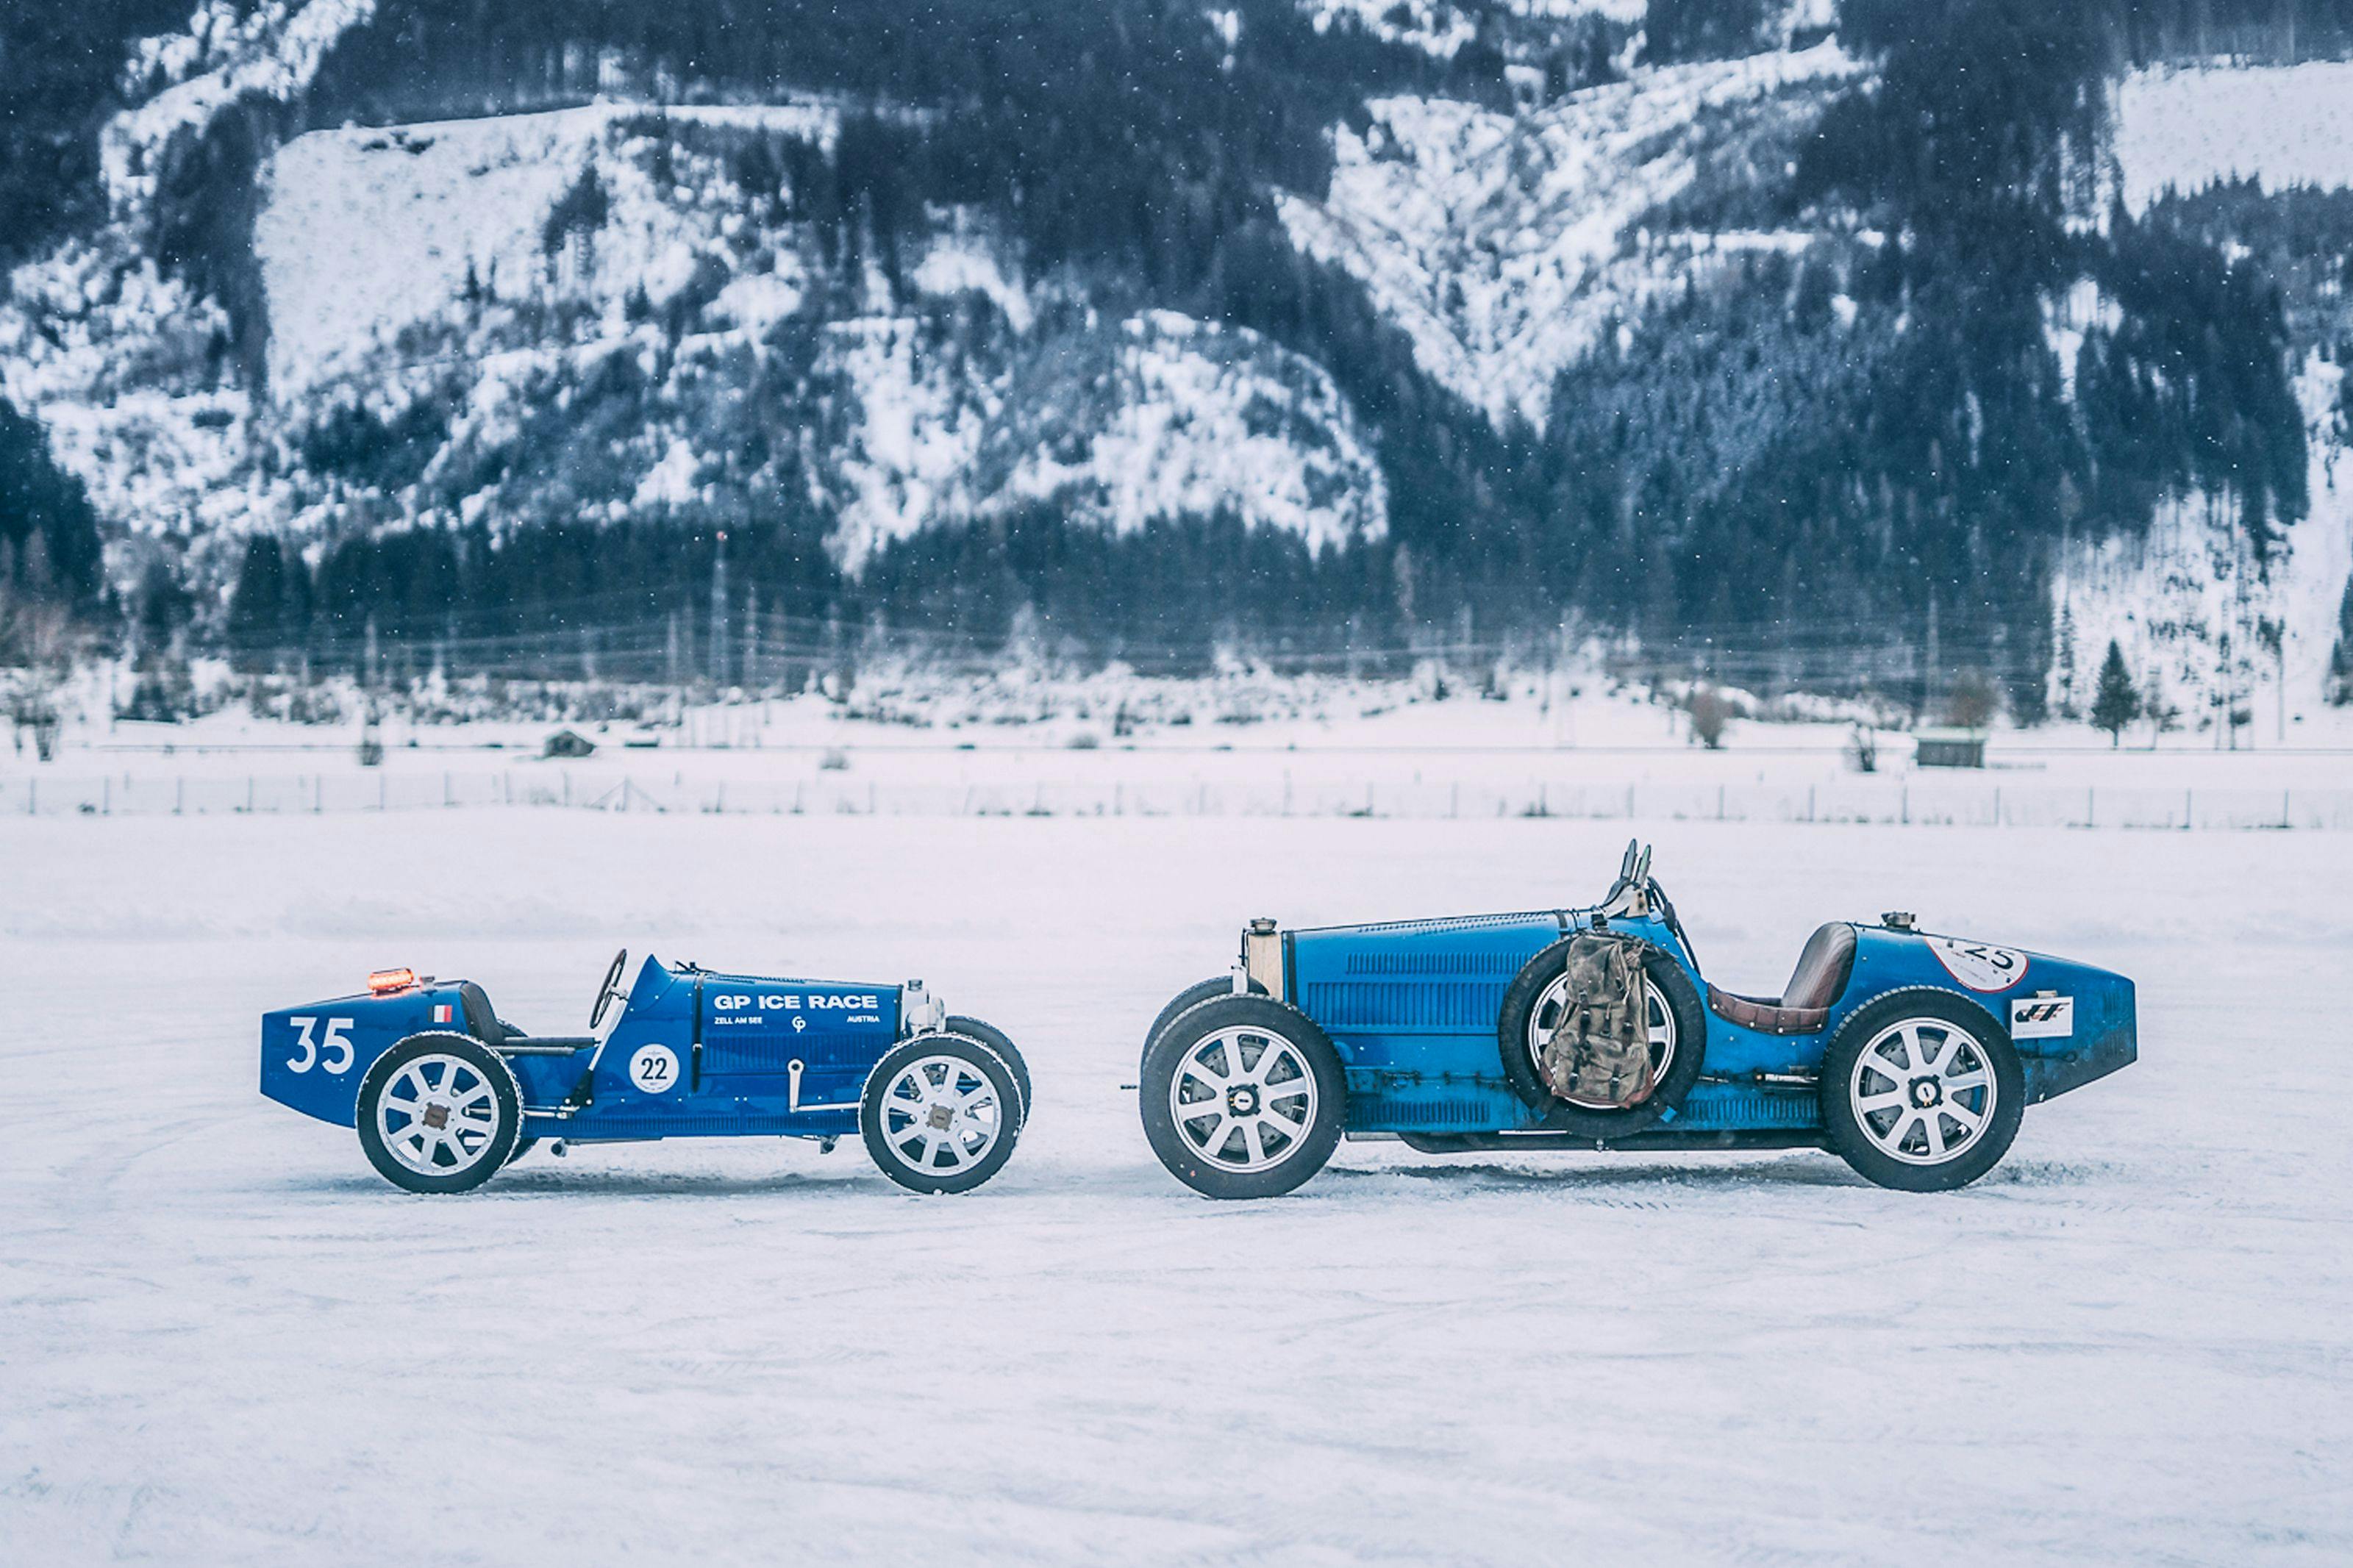 Bugatti retourne à la GP Ice Race plus de 60 ans après sa toute première apparition